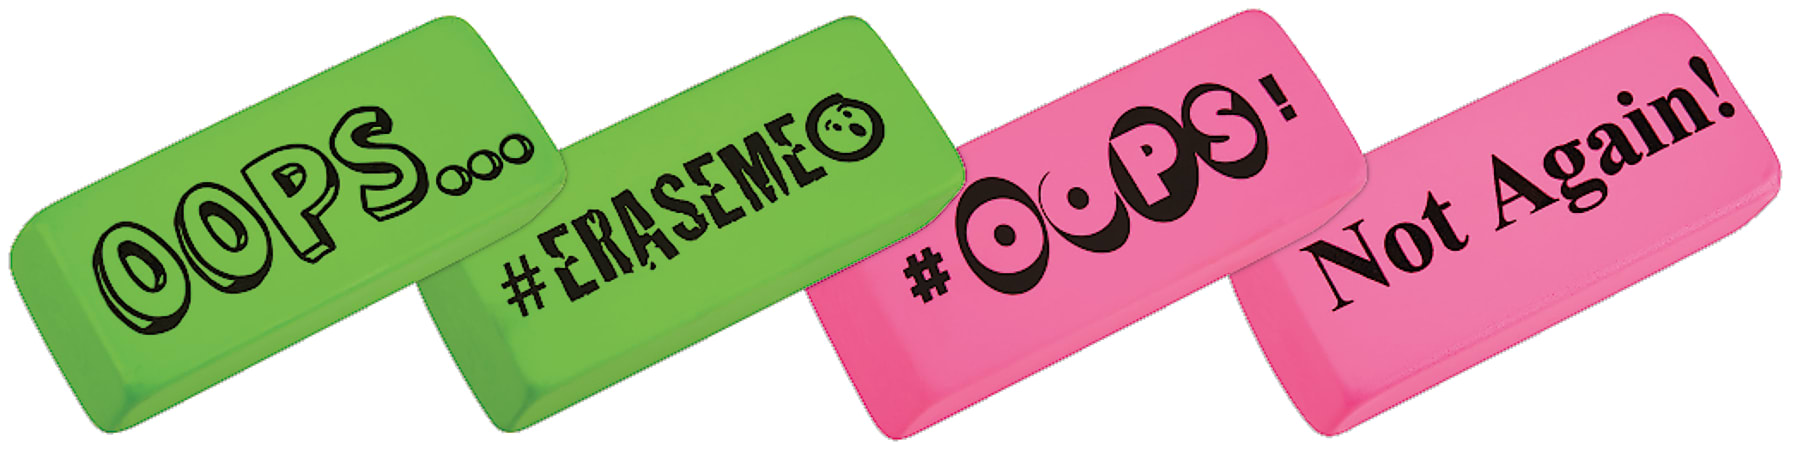 Office Depot® Brand Jumbo Eraser, Green/Pink